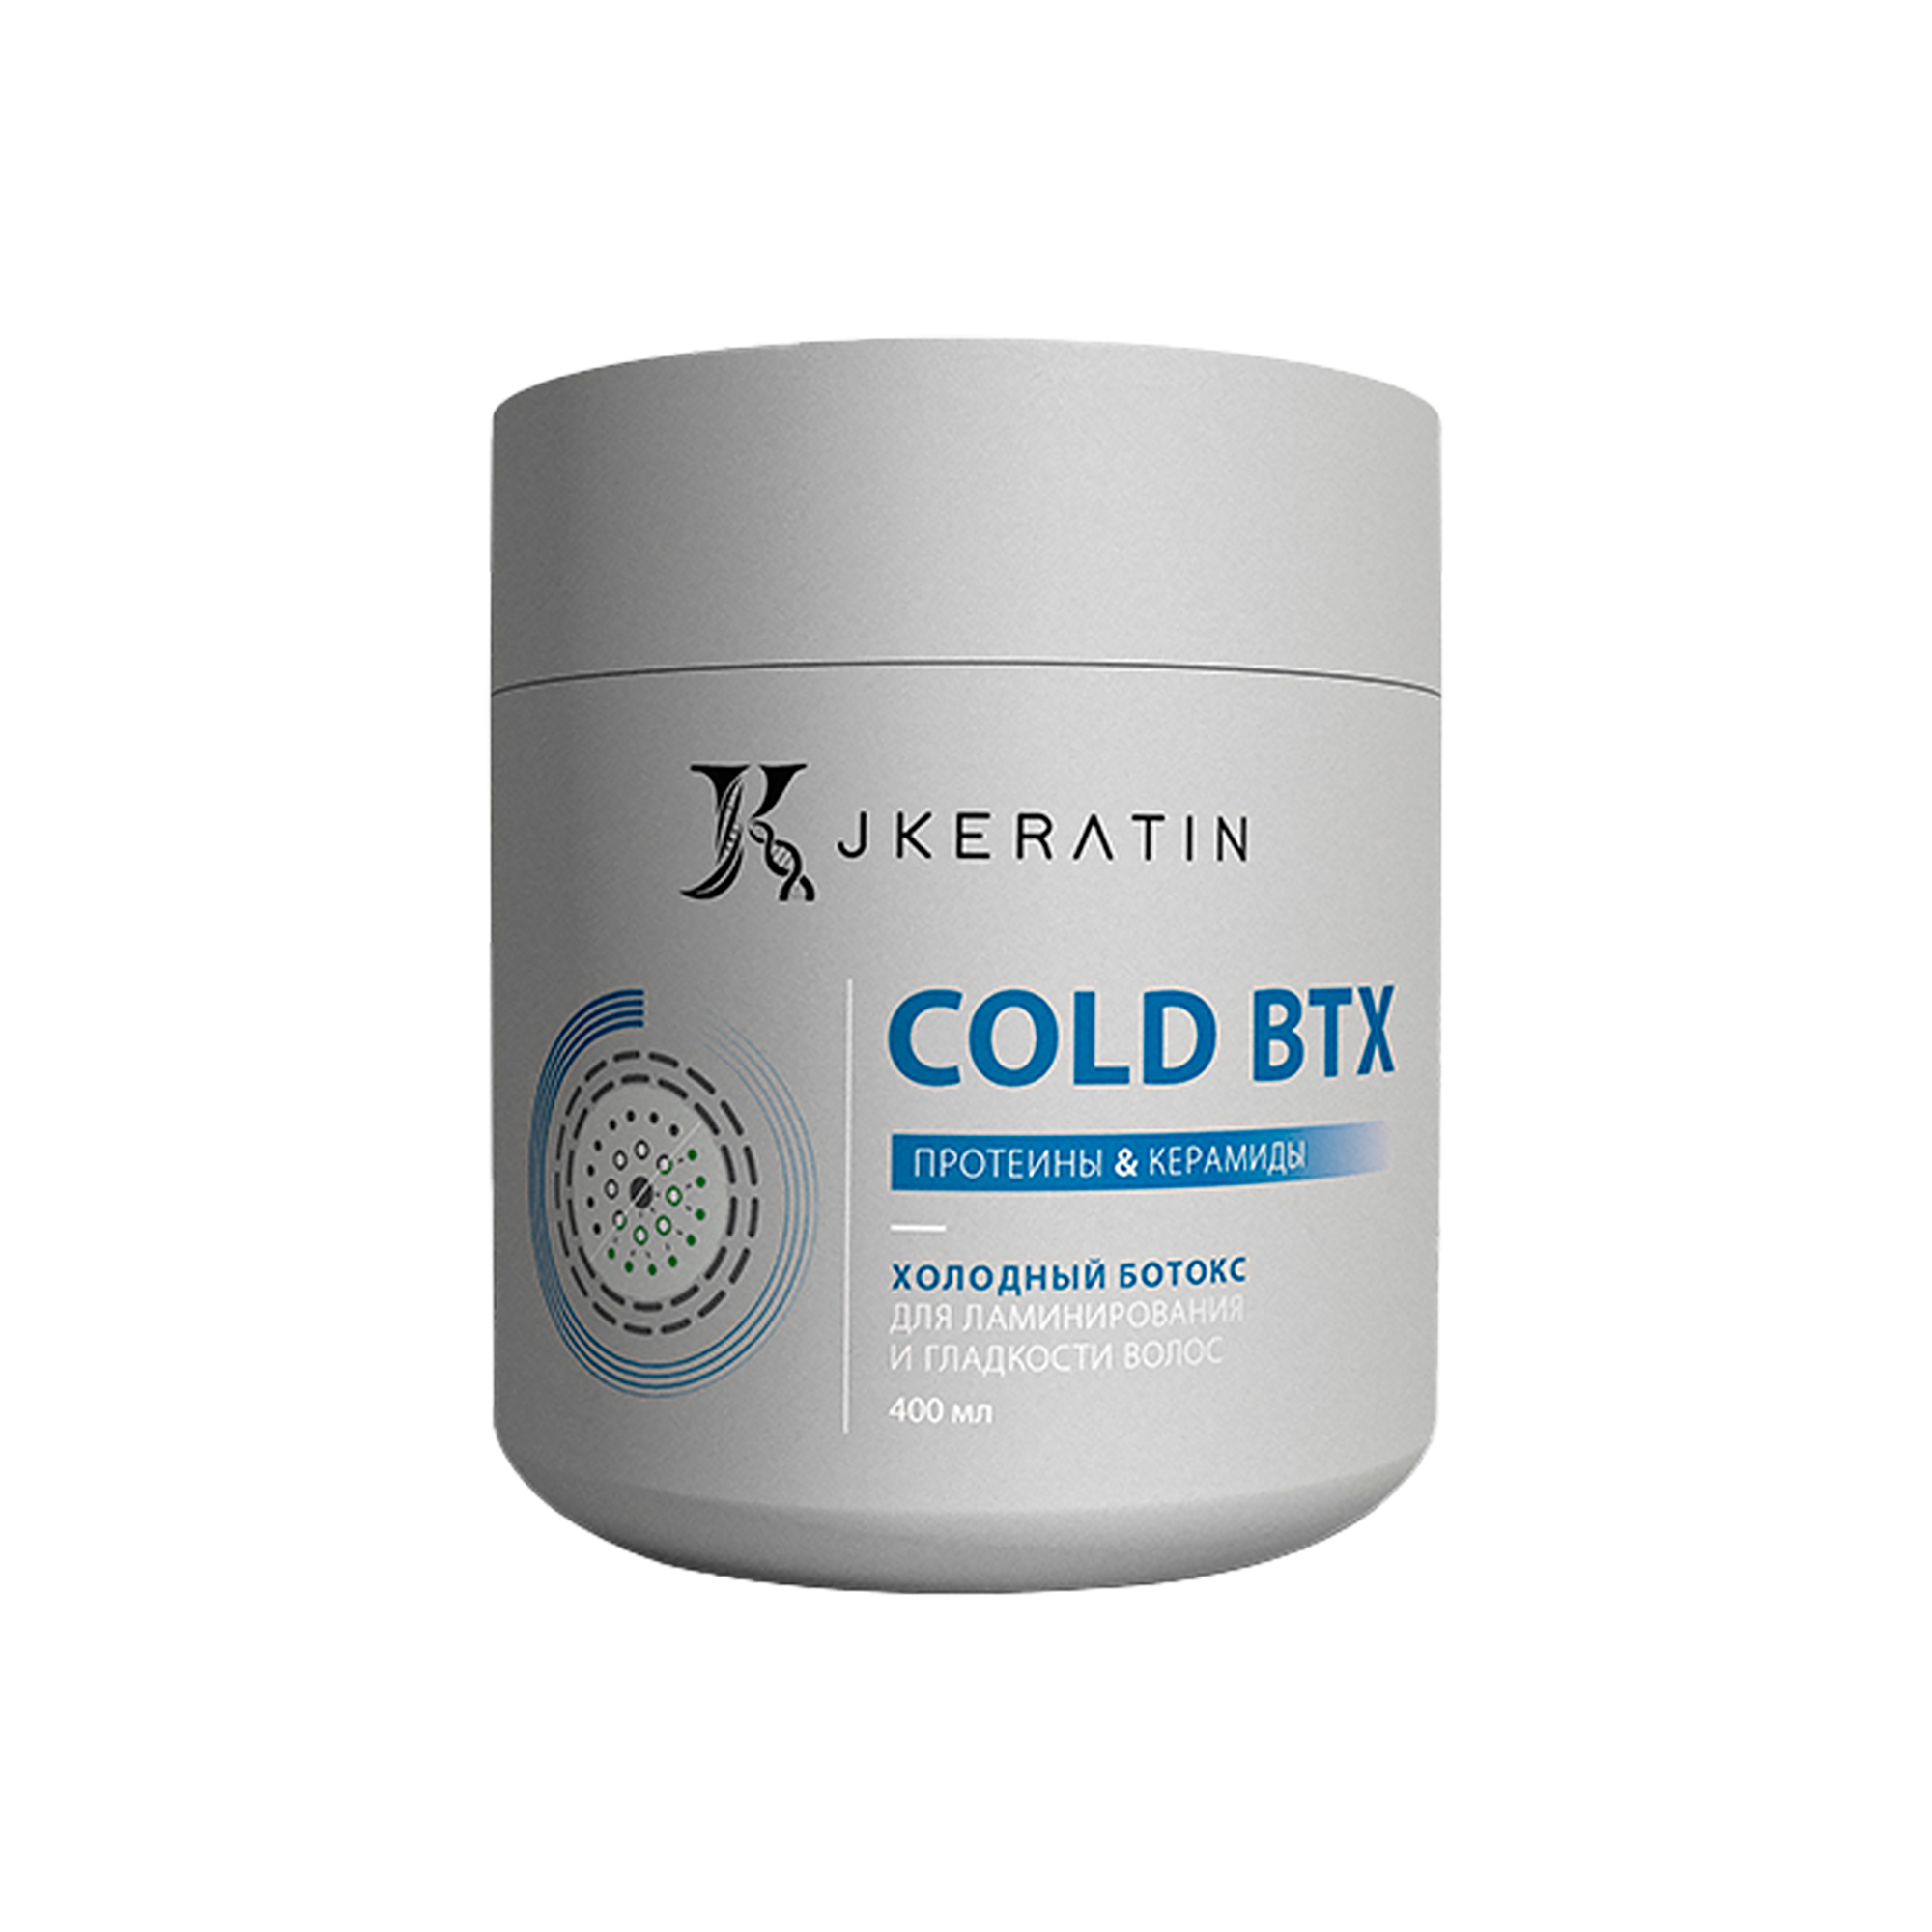 Холодный ботокс JKeratin Cold BTX для ламинирования и гладкости волос, 400 мл холодный сахарный воск сенегальская акация cold sugar wax